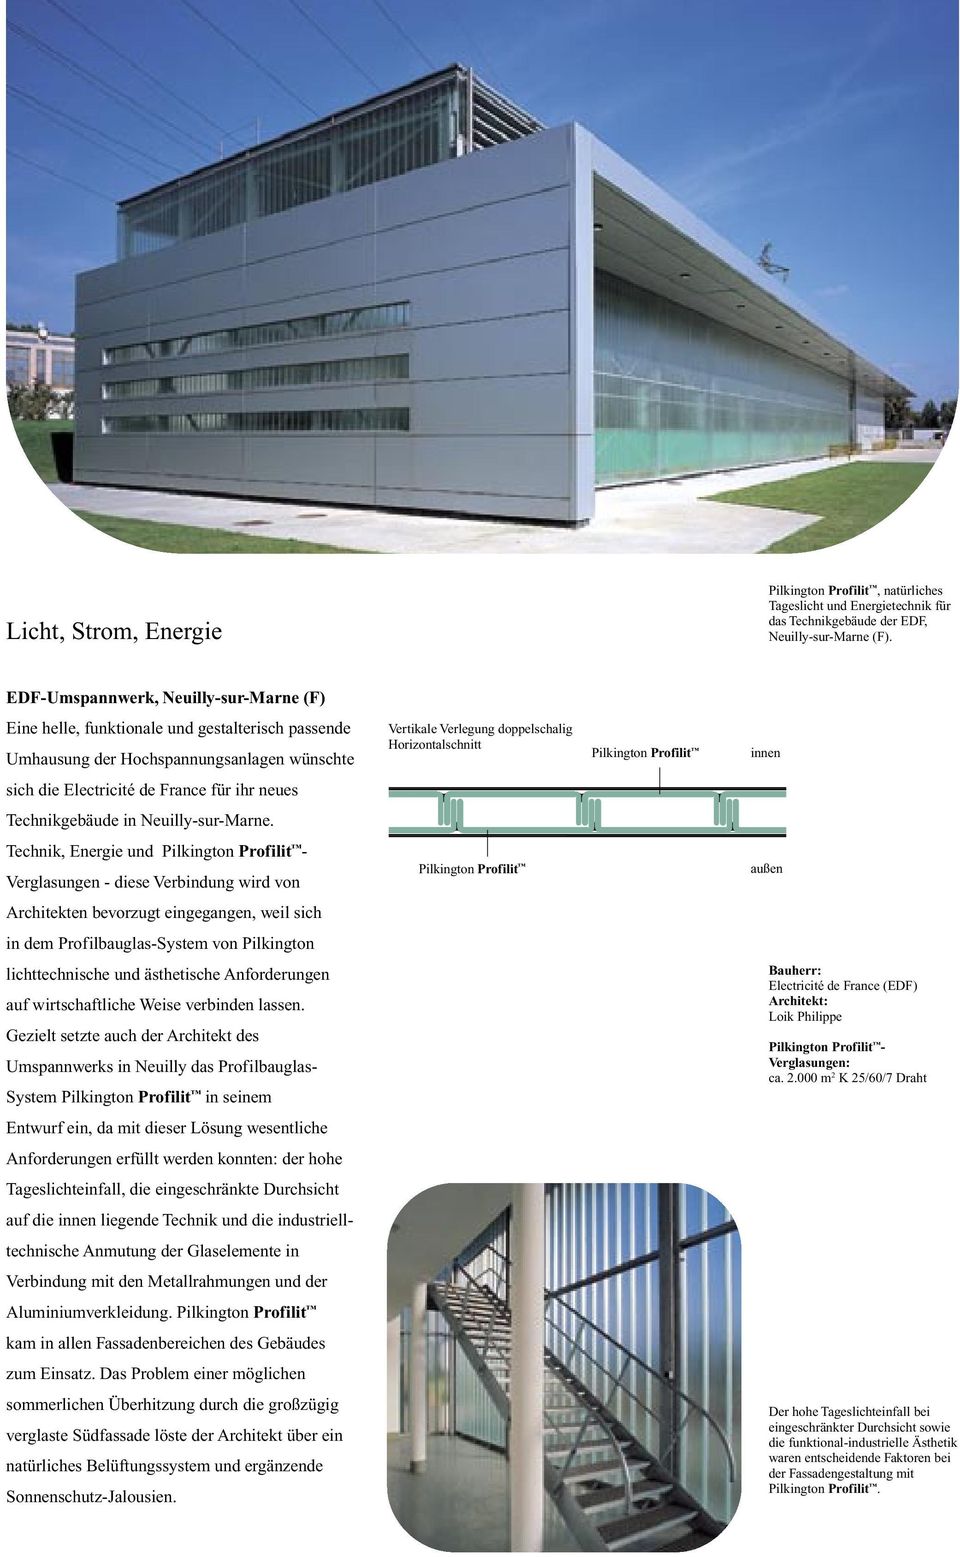 neues Technikgebäude in Neuilly-sur-Marne.